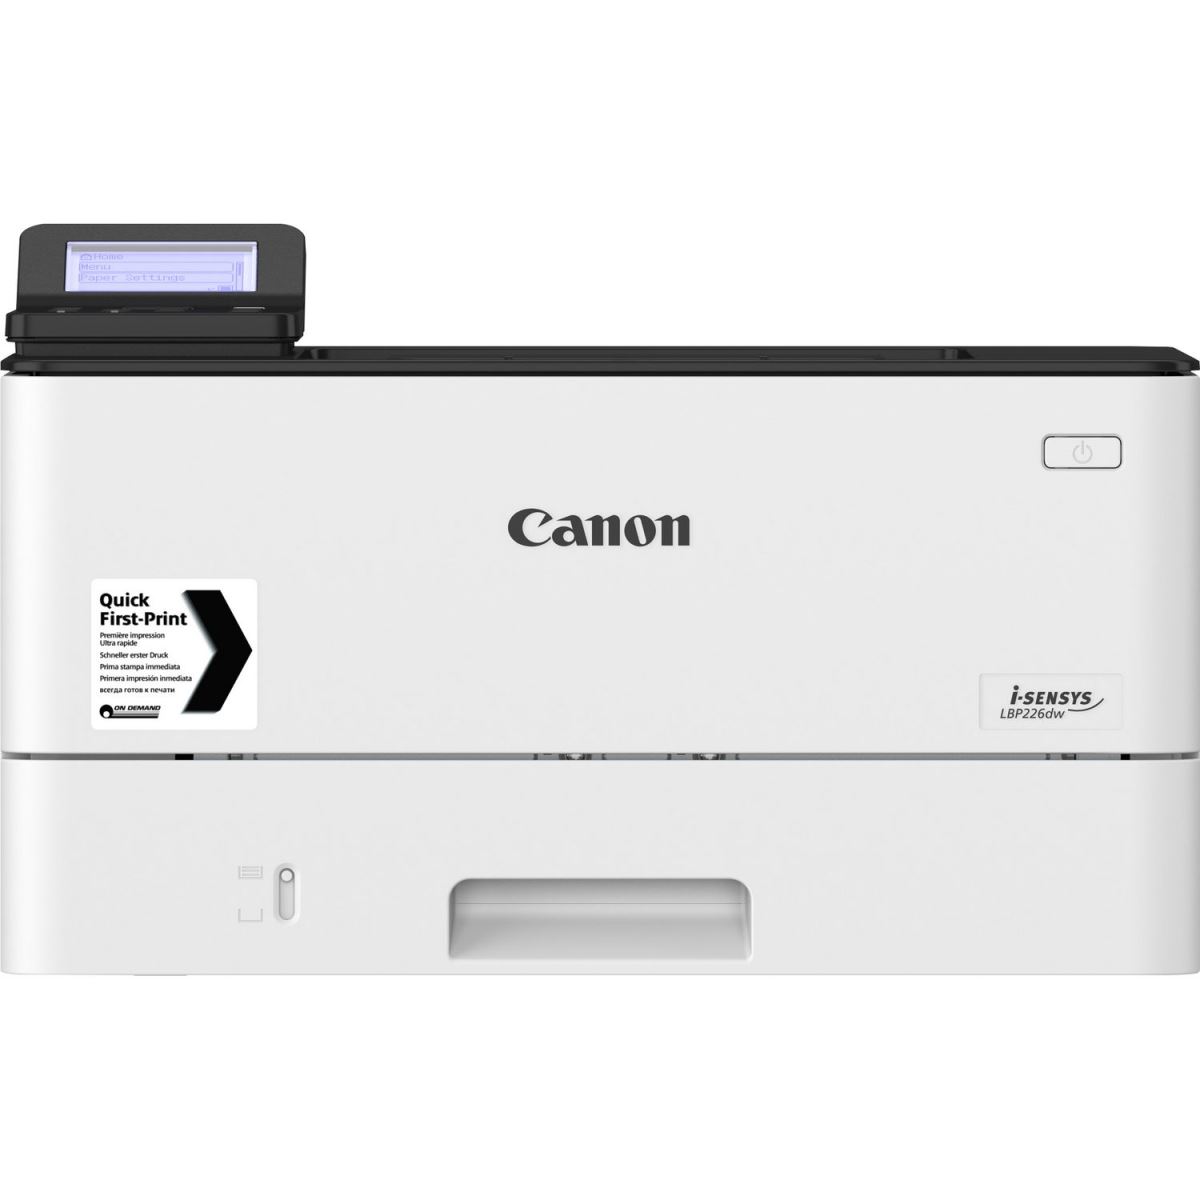 Máy in đen trắng Canon 226DW và những ưu điểm nổi bật khi sử dụng